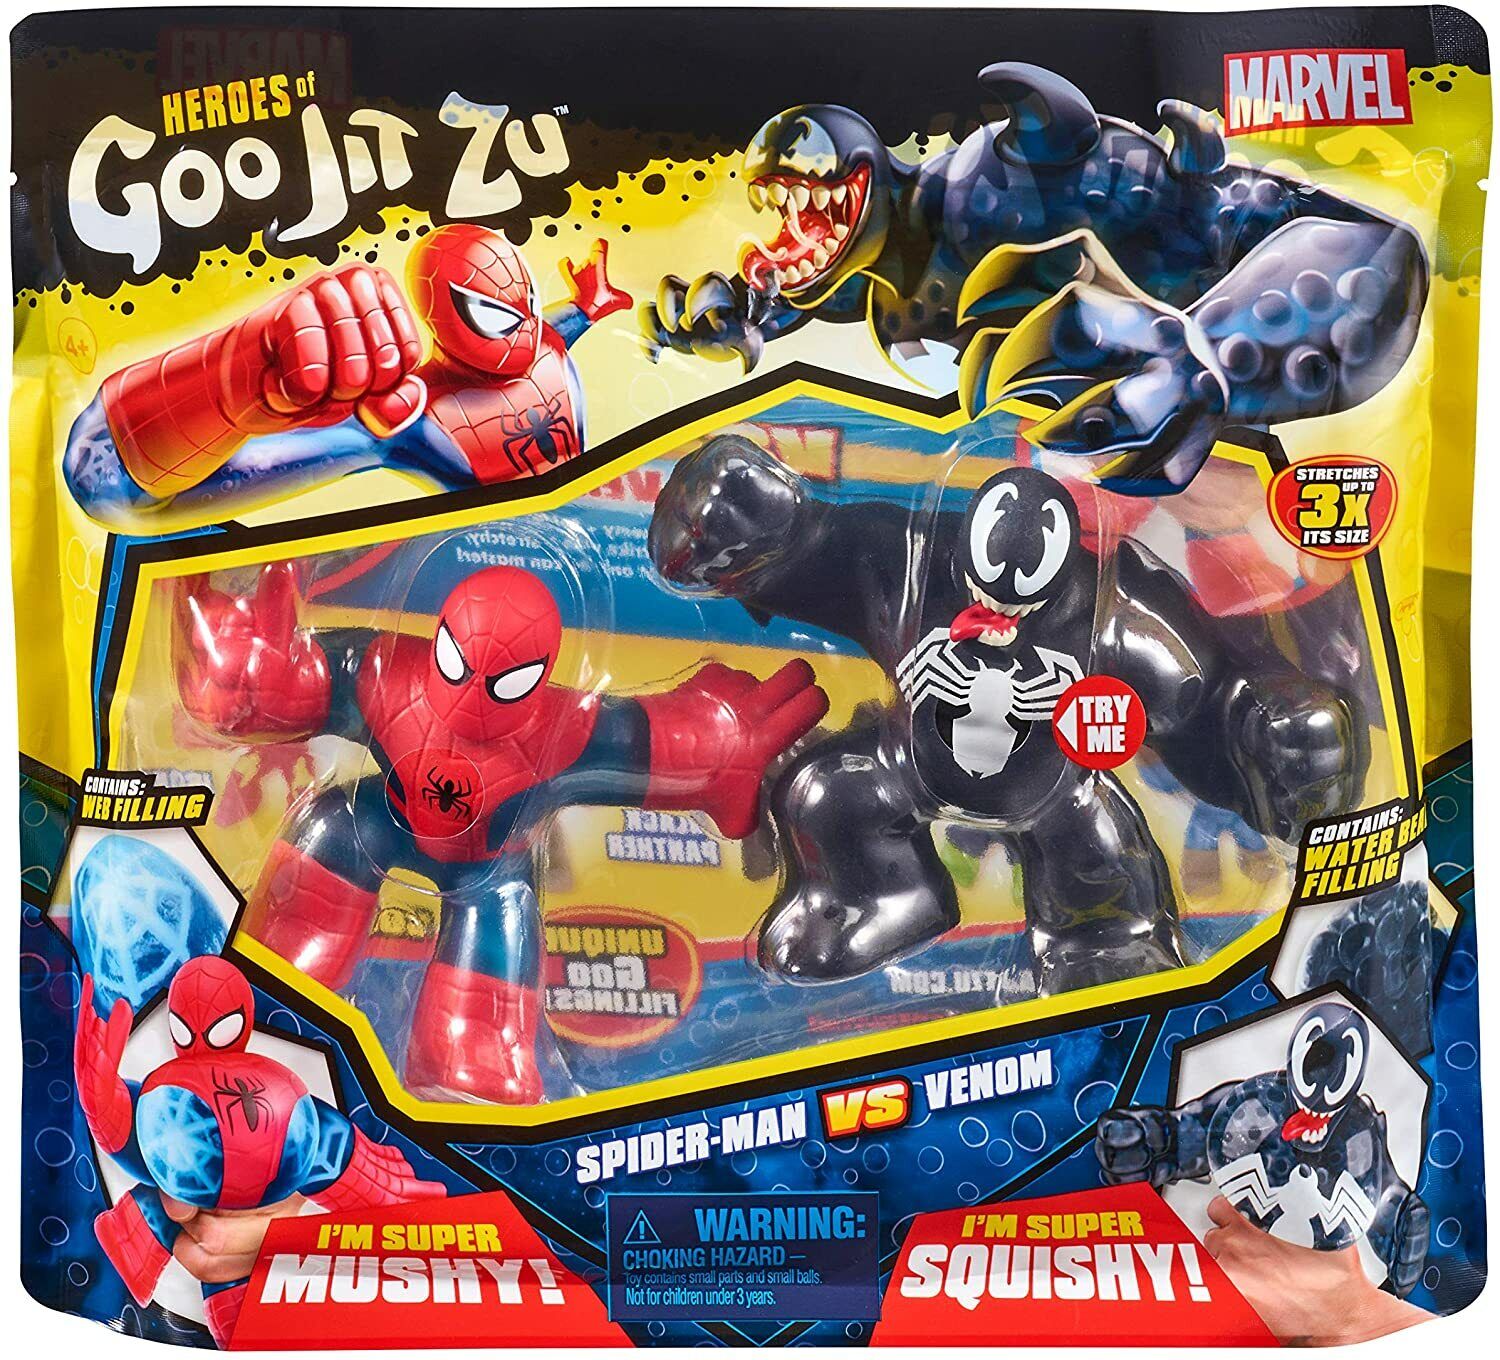 Heroes of Goo Jit Zu x Marvel Spider-Man vs Venom Versus Pack